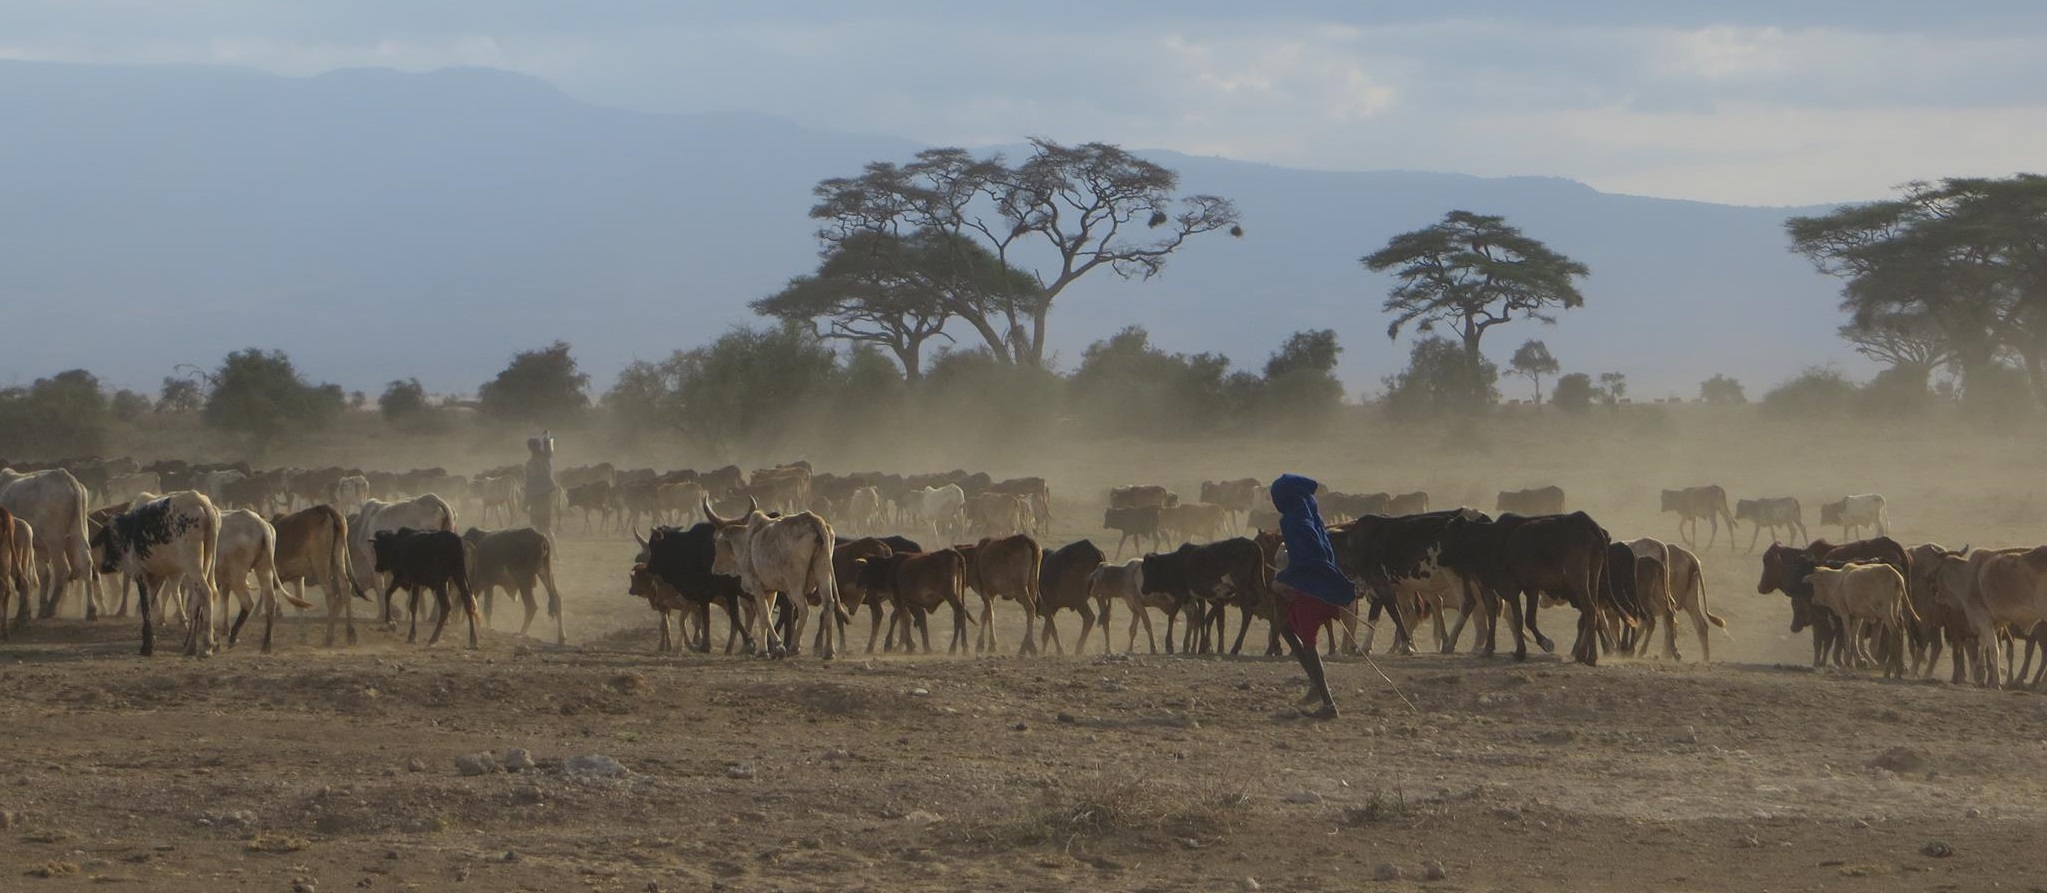 Cattle in Amboseli, Kenya